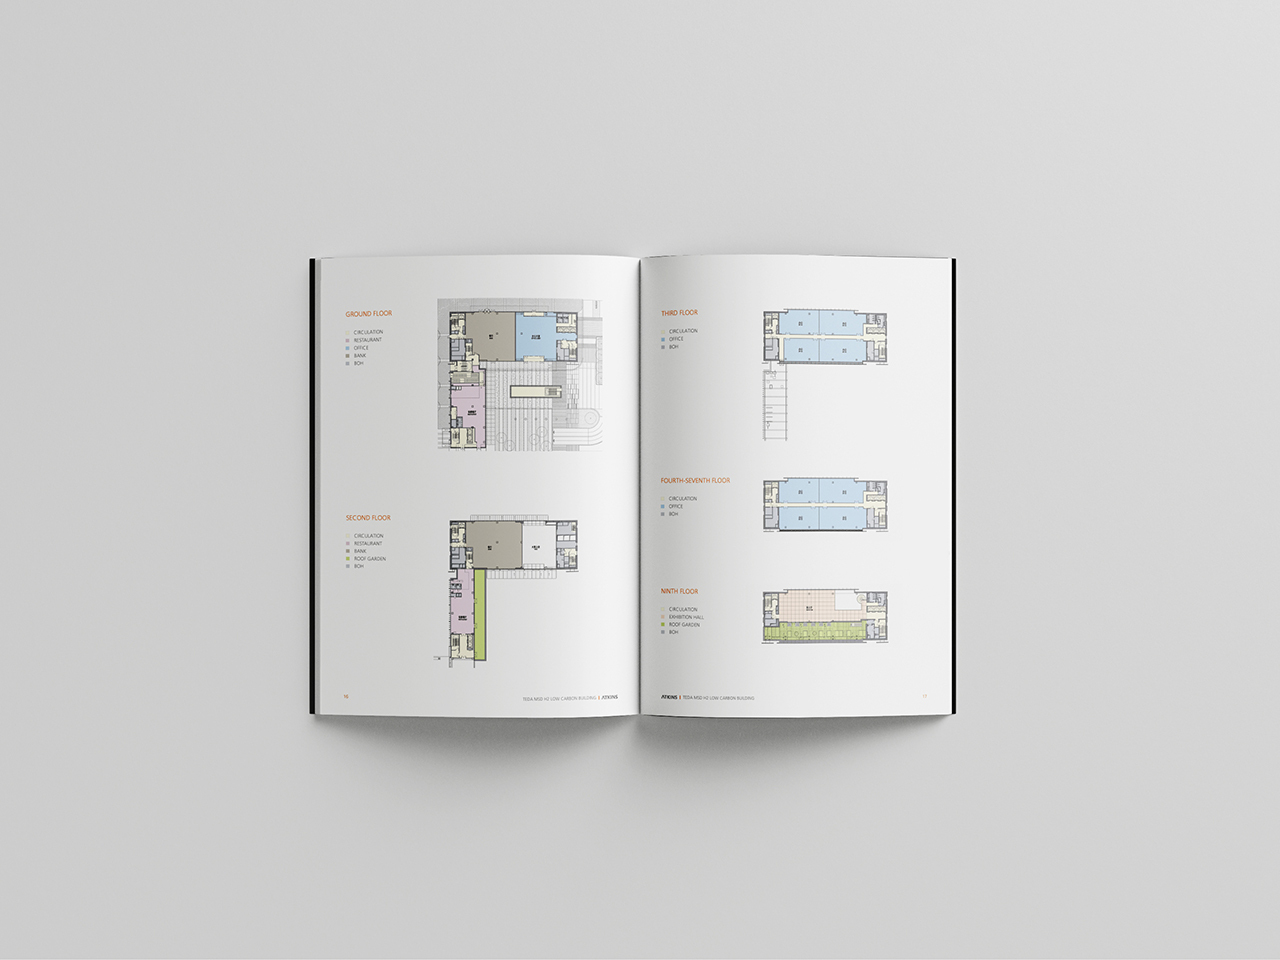 国际建筑品牌 设计竞赛项目宣传册设计图7